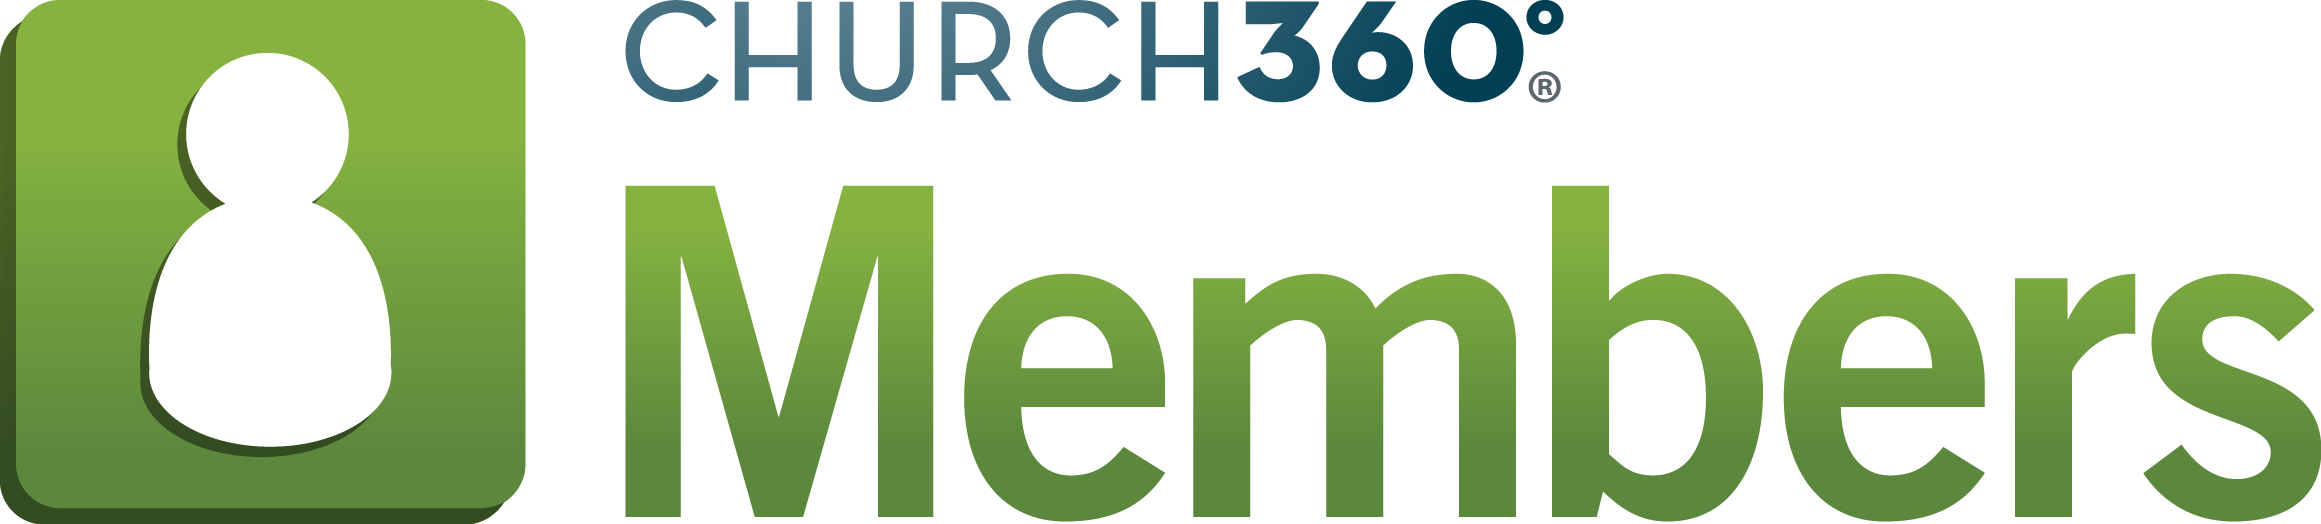 Church360-Members